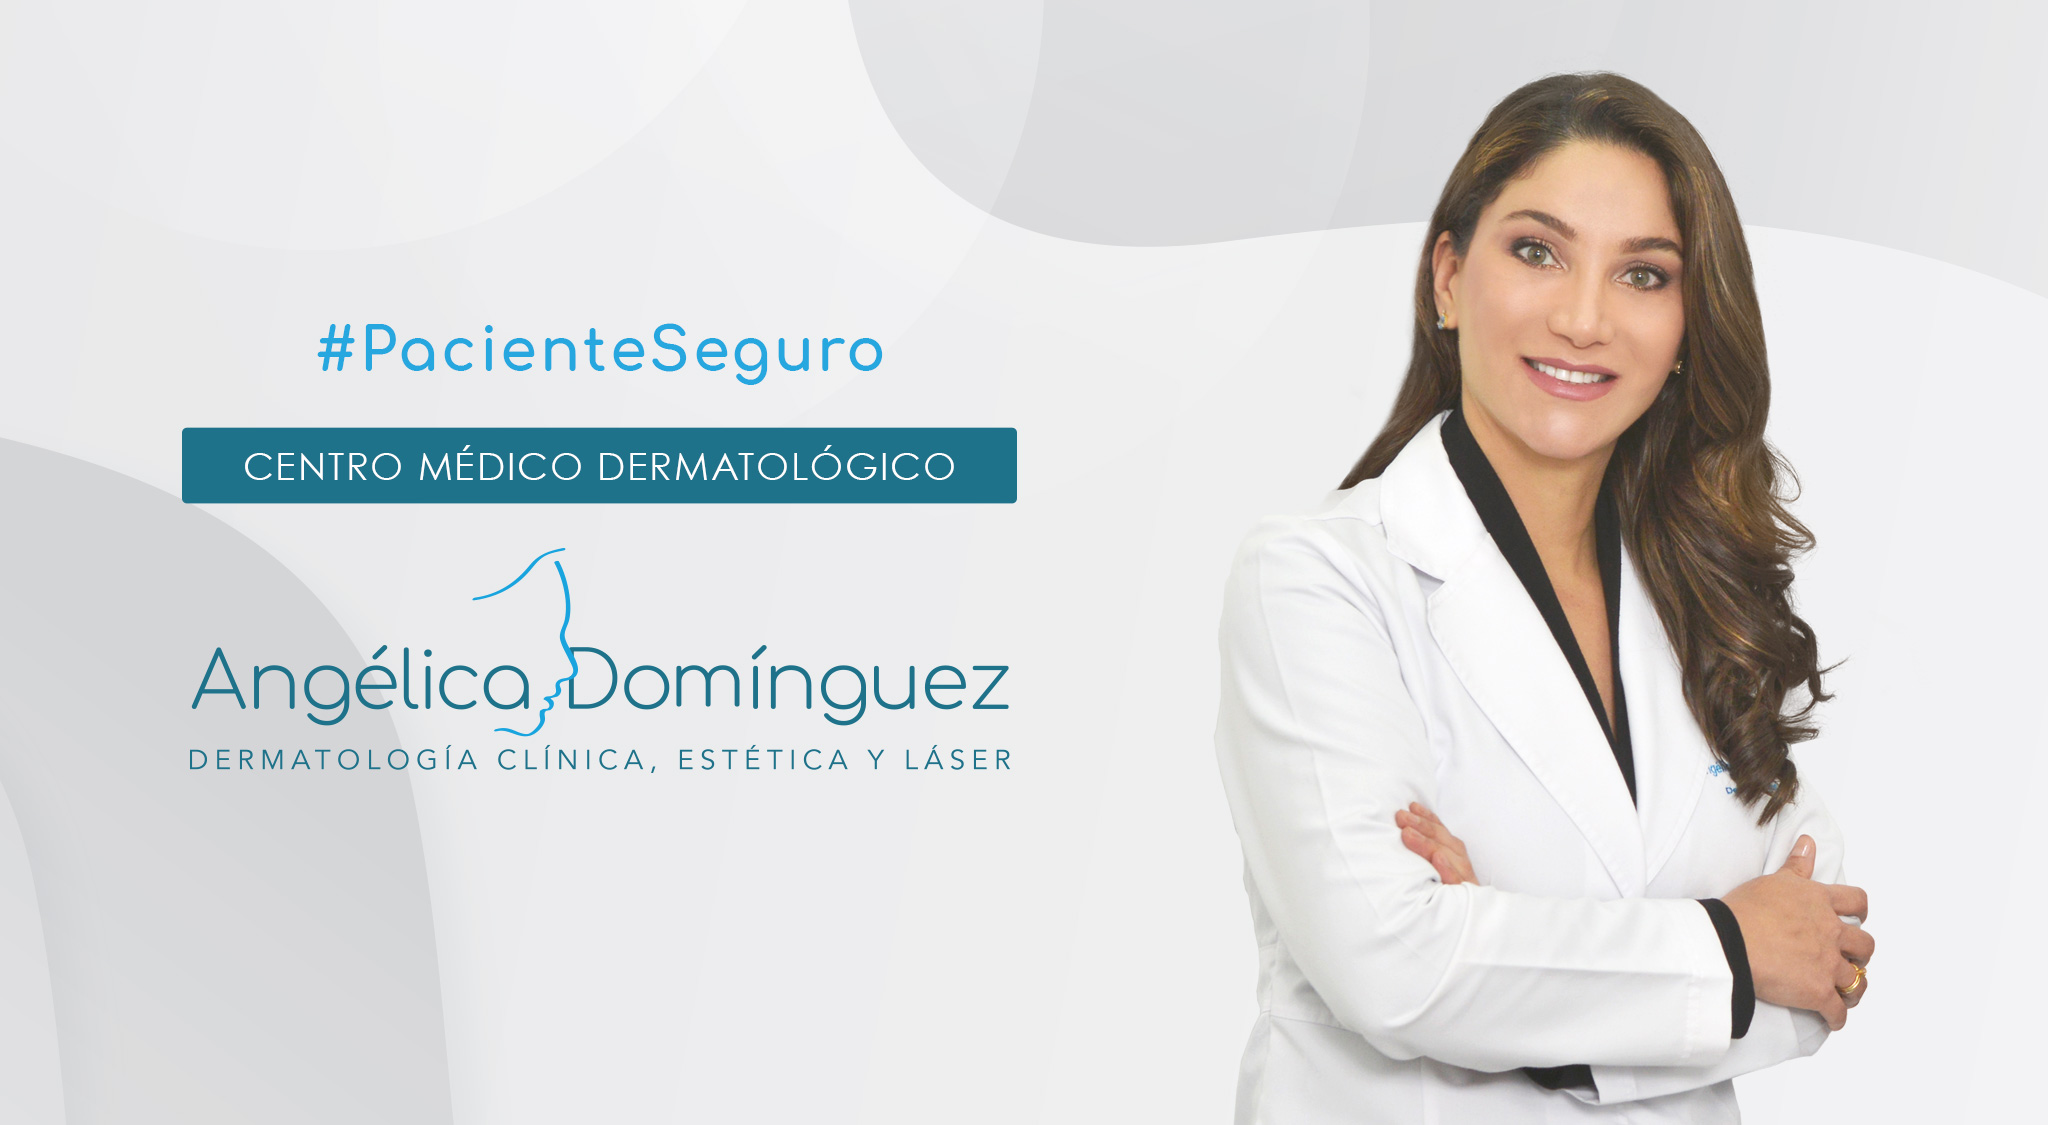 Dr. Angélica Dominguez